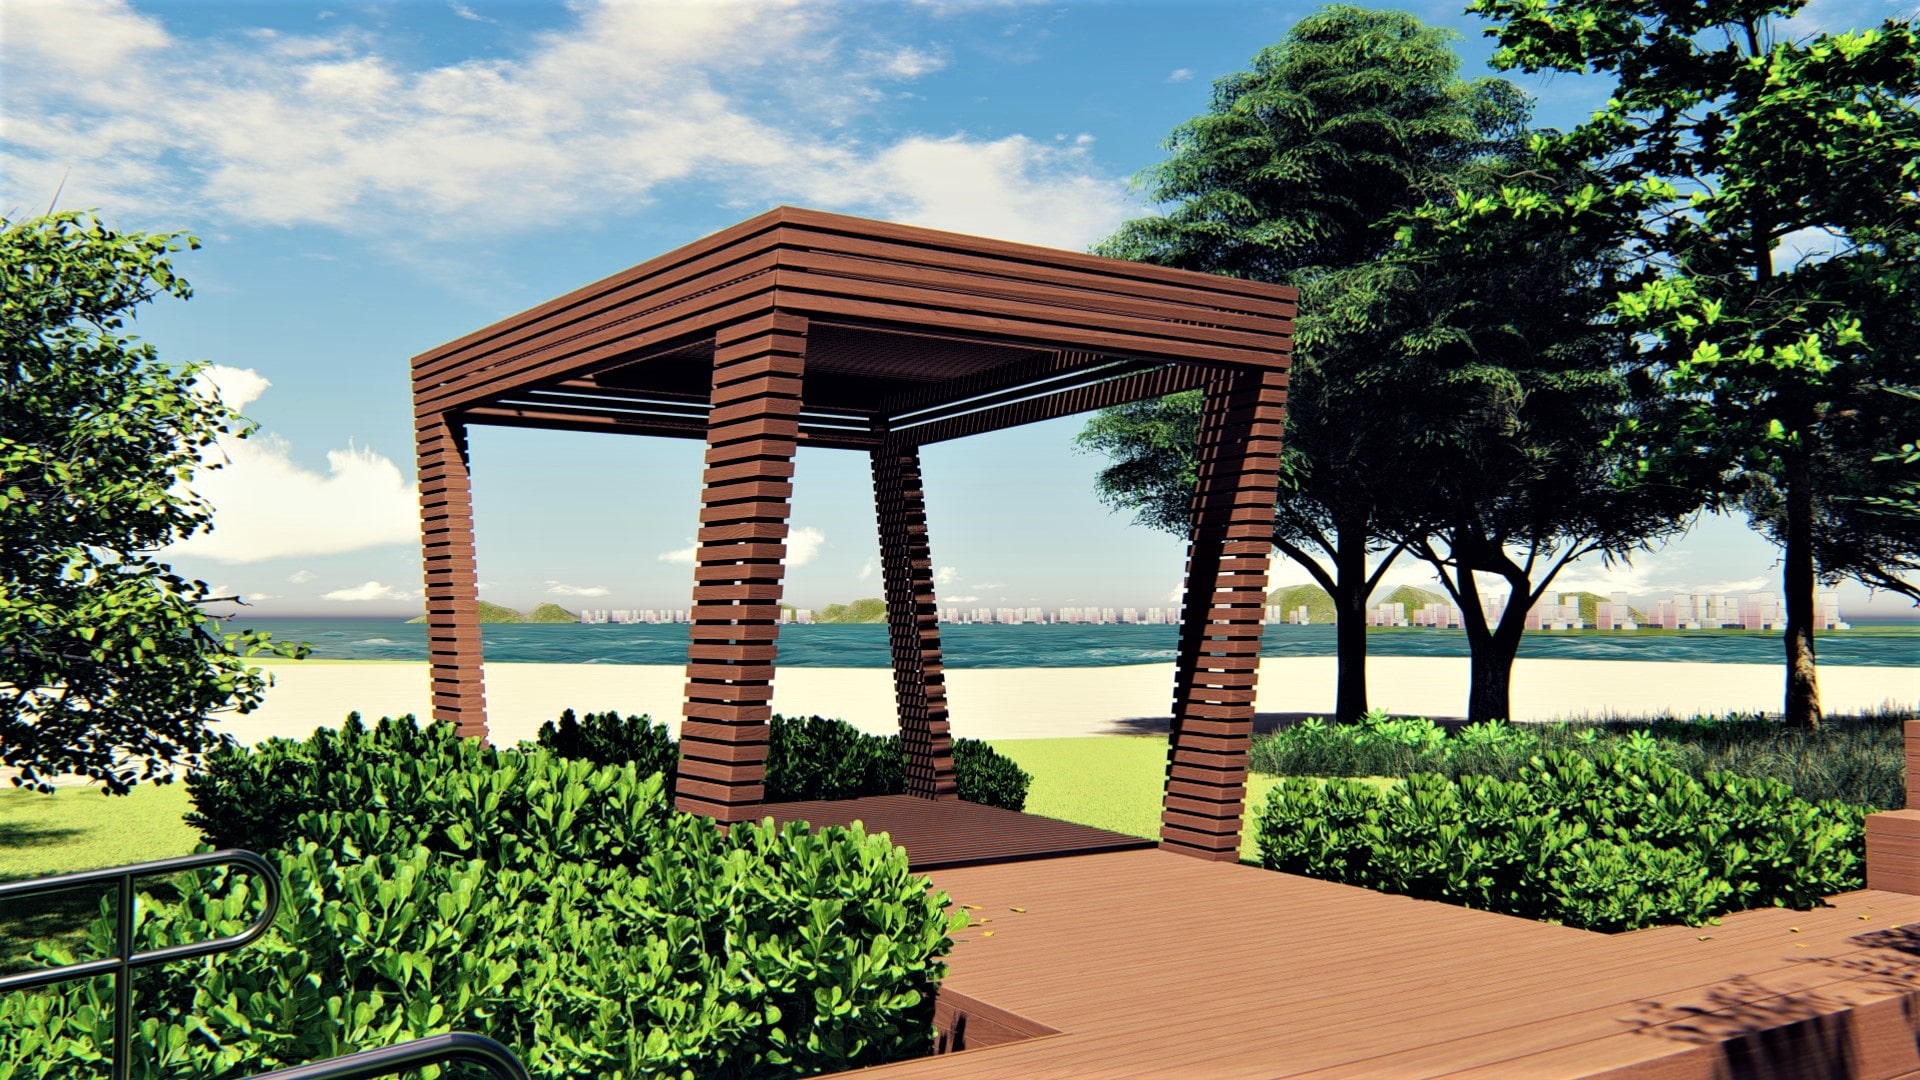 Projeção 3D do mirante do parque. O espaço é arborizado e possui uma estrutura coberta de madeira, aberta nas laterais, com vista para a praia.